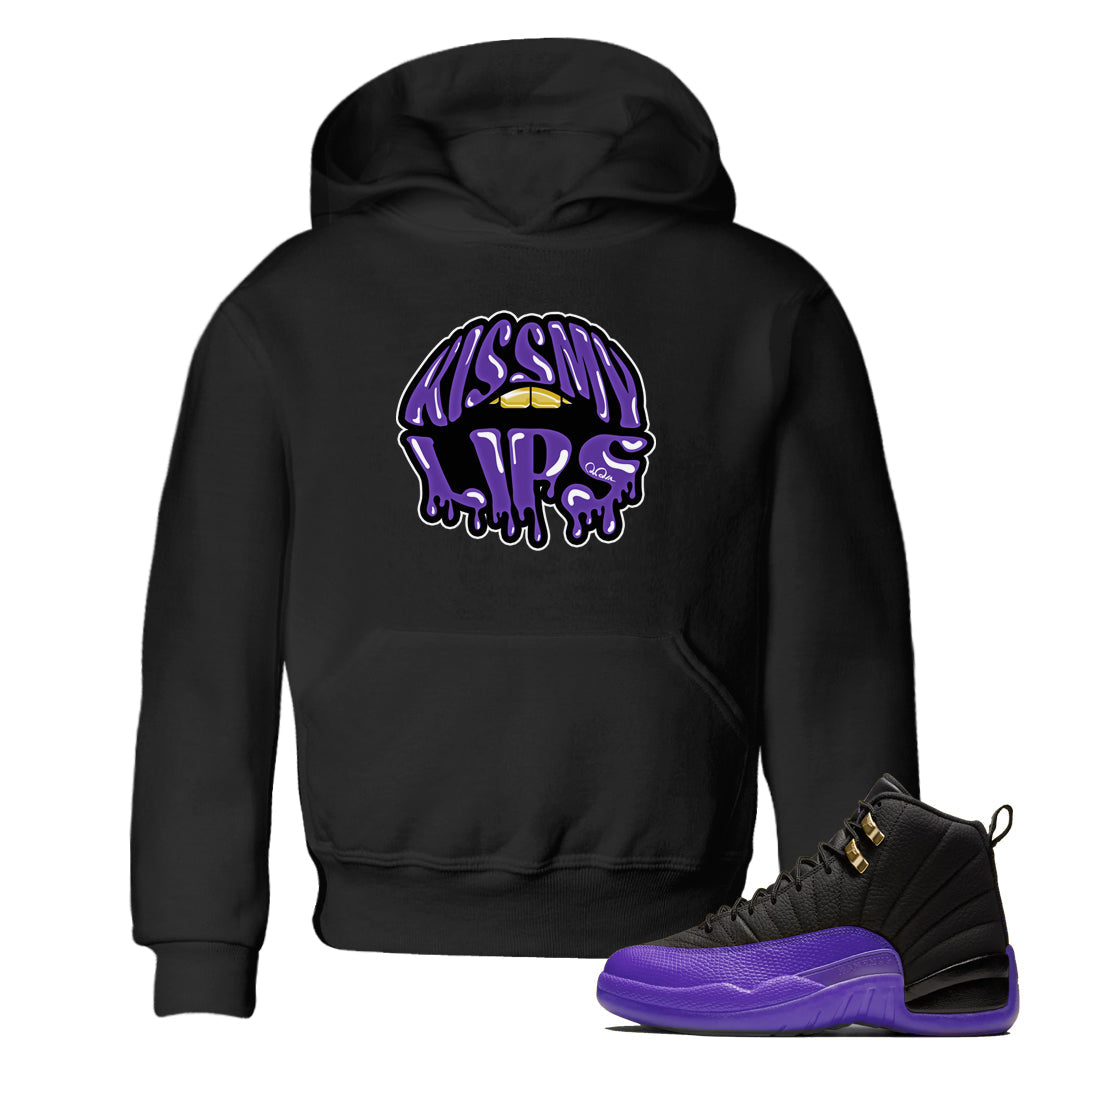 Air Jordan 12 Field Purple Sneaker Match Tees Kiss My Lips Sneaker Tees AJ12 Field Purple Sneaker Release Tees Kids Shirts Black 1